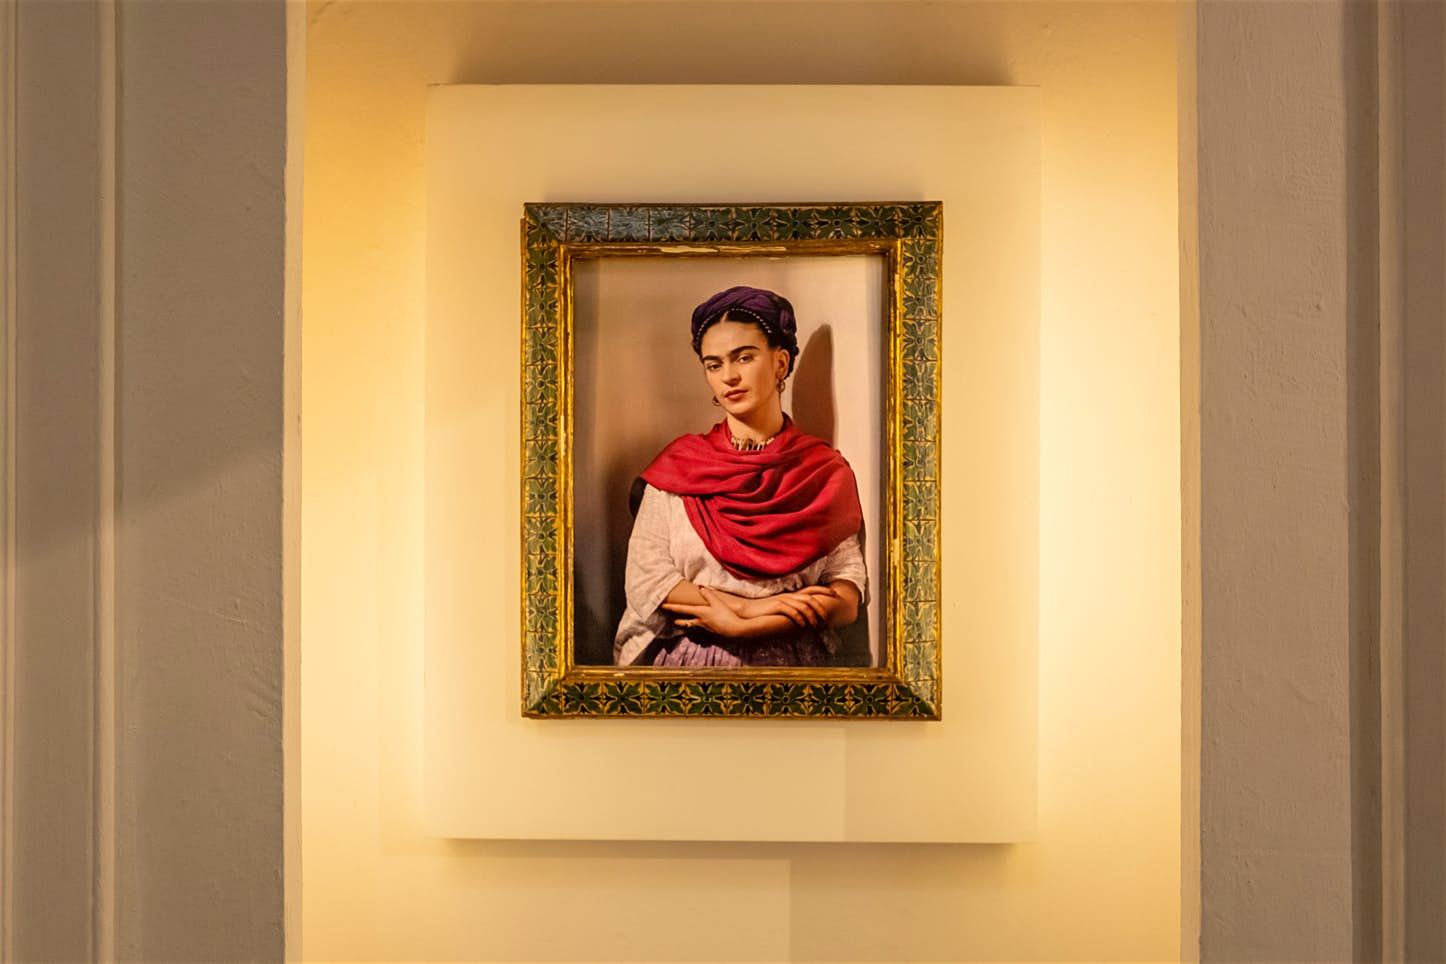 Free Frida Kahlo exhibition